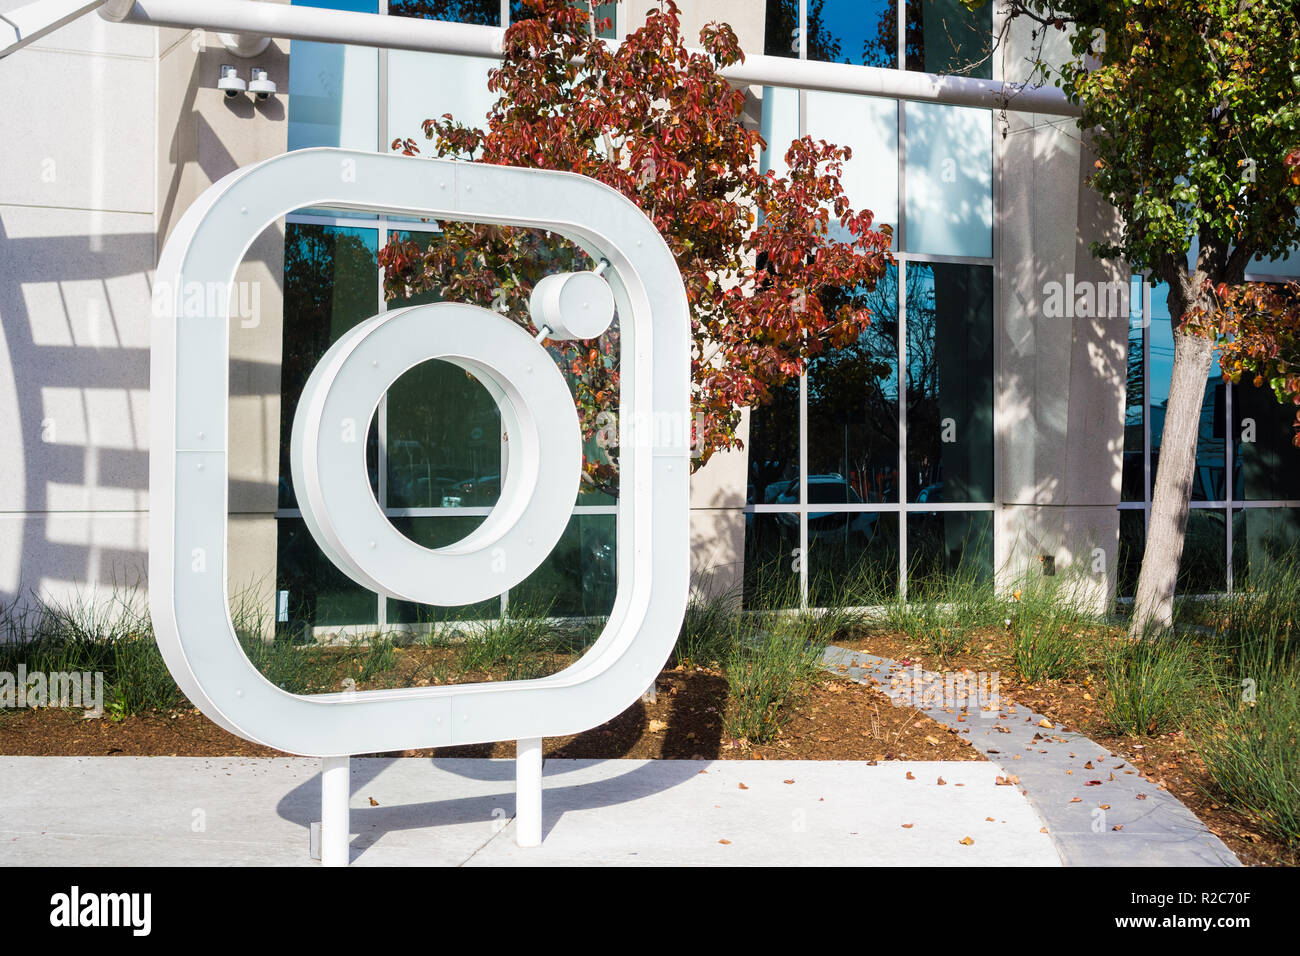 Décembre 27, 2017 Menlo Park / CA / USA - logo Instagram devant les bureaux situé dans la Silicon Valley, Instagram est administré par Facebook Banque D'Images